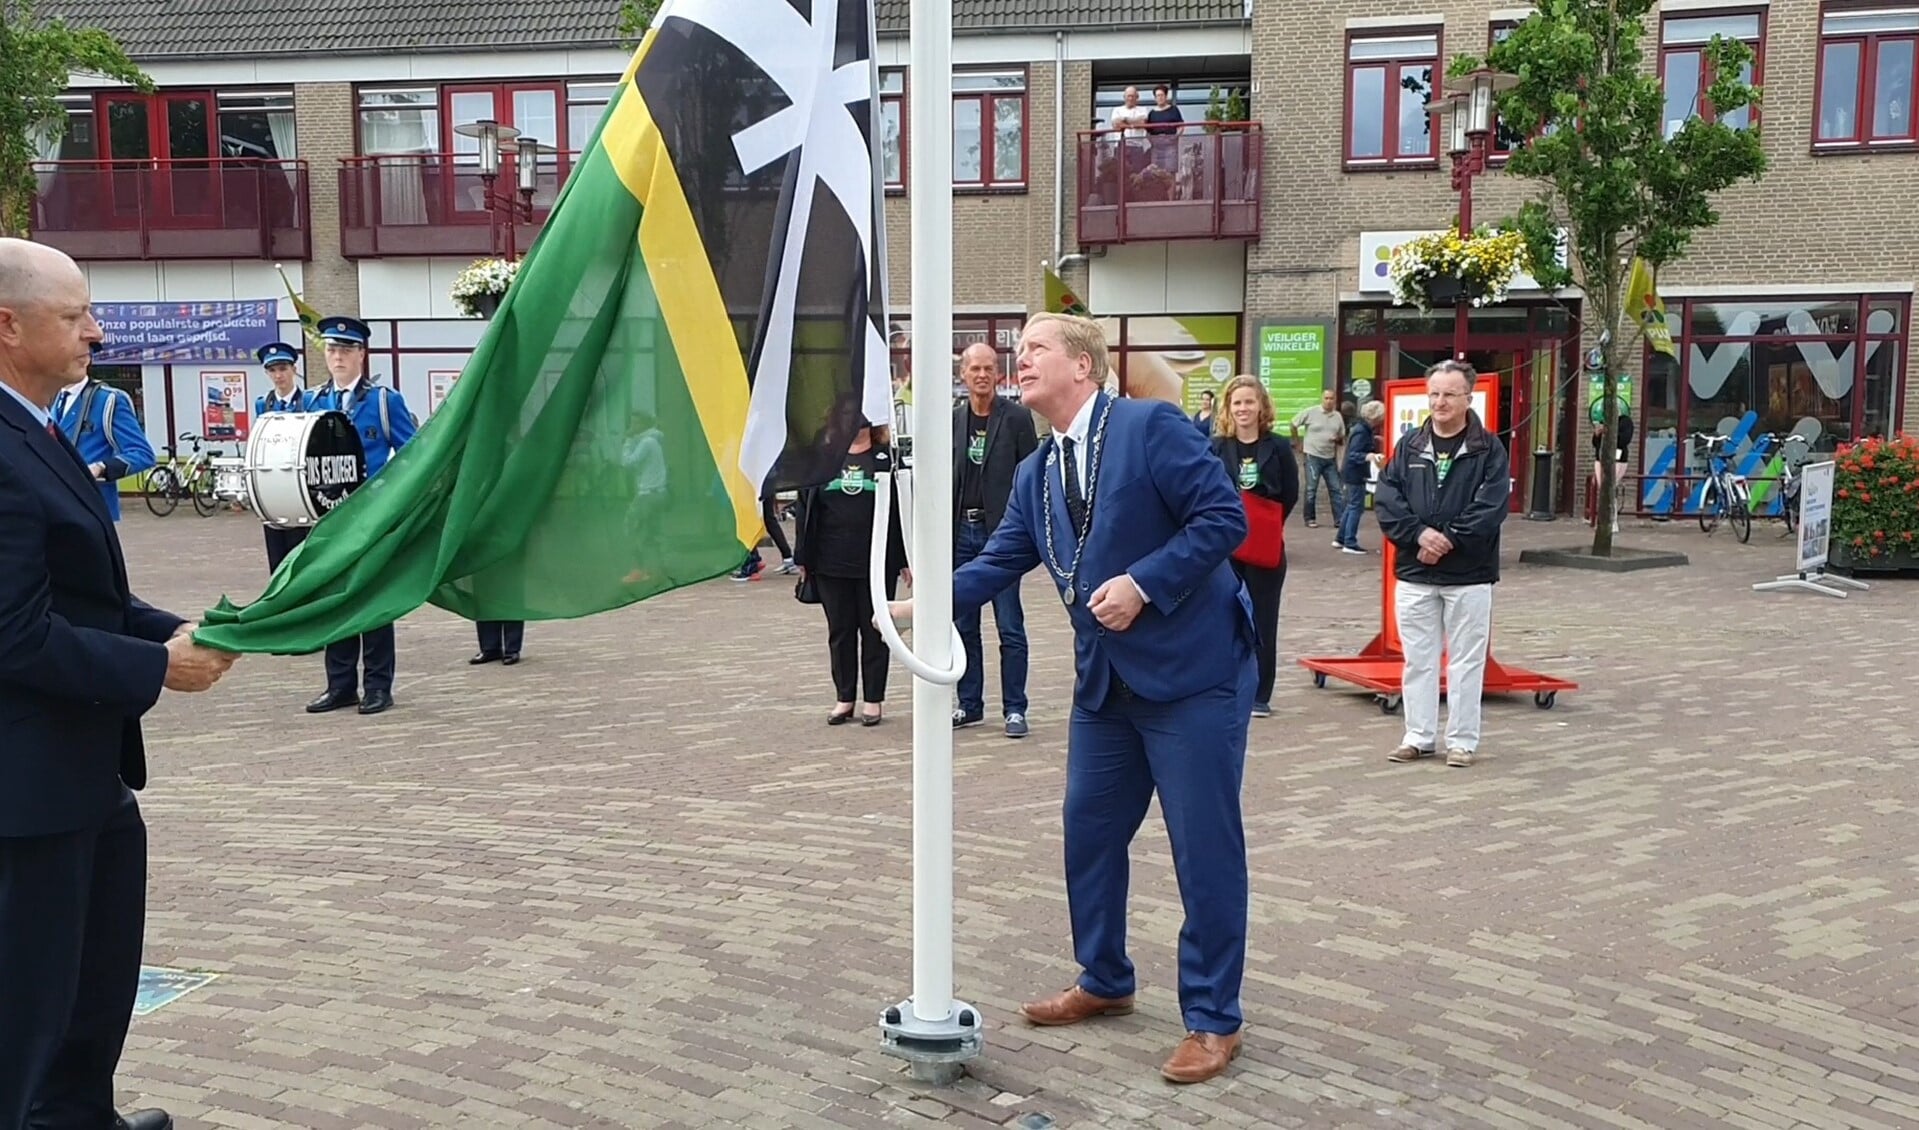 Burgemeester De Jong hees op het Dorpsplein in Rockanje de speciale jubileumvlag